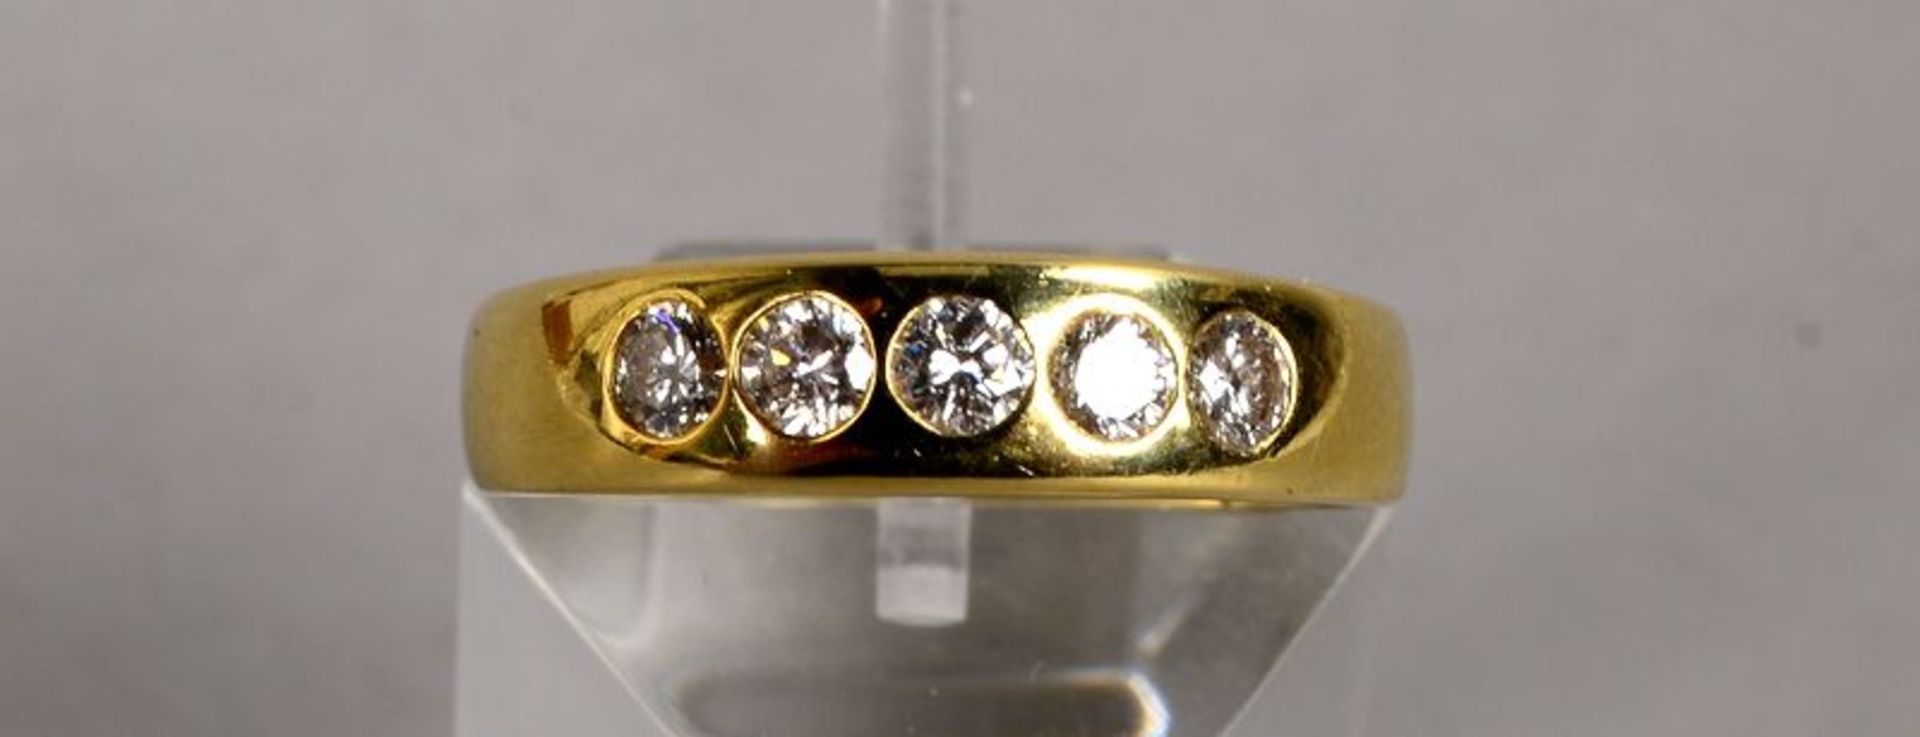 Ring, 585 GG, mit 5-fachem Brillantbesatz/zusammen ca. 0,50 ct, Farbe Wei&szlig;; RG 55, Gewicht 5 g - Image 2 of 2